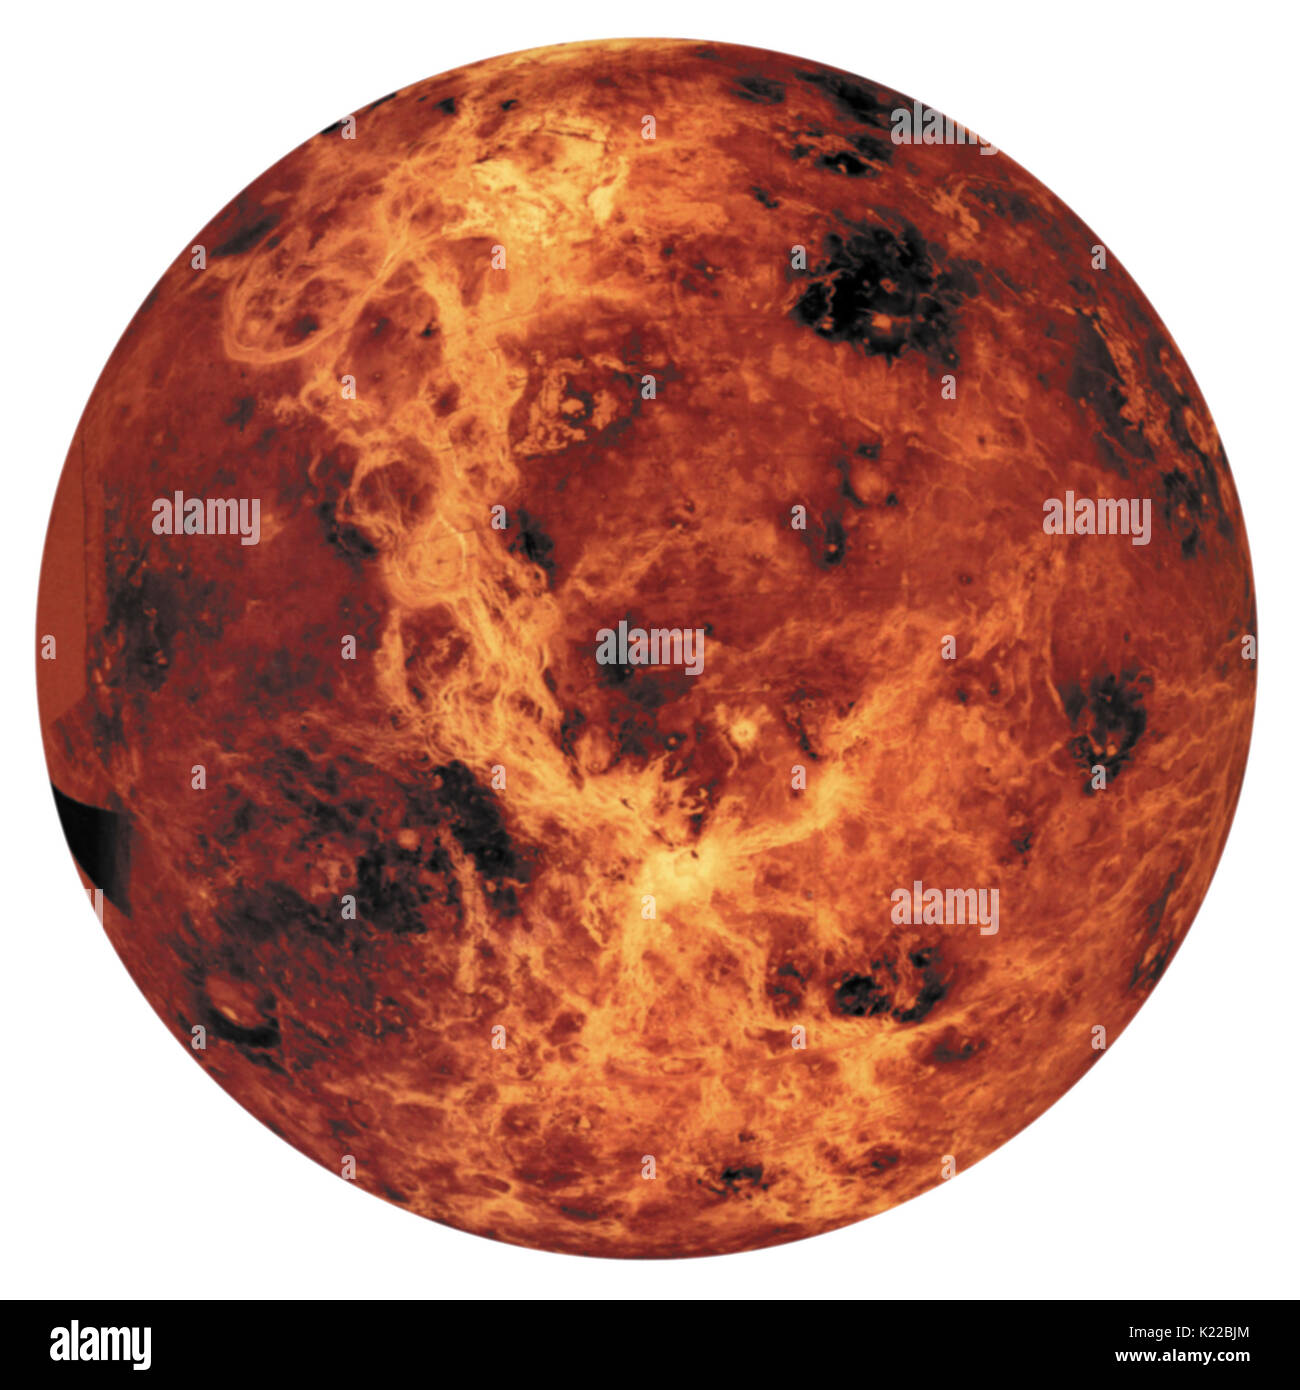 Venere è stato a lungo considerato il pianeta con il maggior numero di caratteristiche in comune con la terra. È quasi la stessa dimensione, la sua orbita è circa la stessa distanza dal sole, ha un'atmosfera spessa ed ha la stessa densità e composizione chimica. Foto Stock